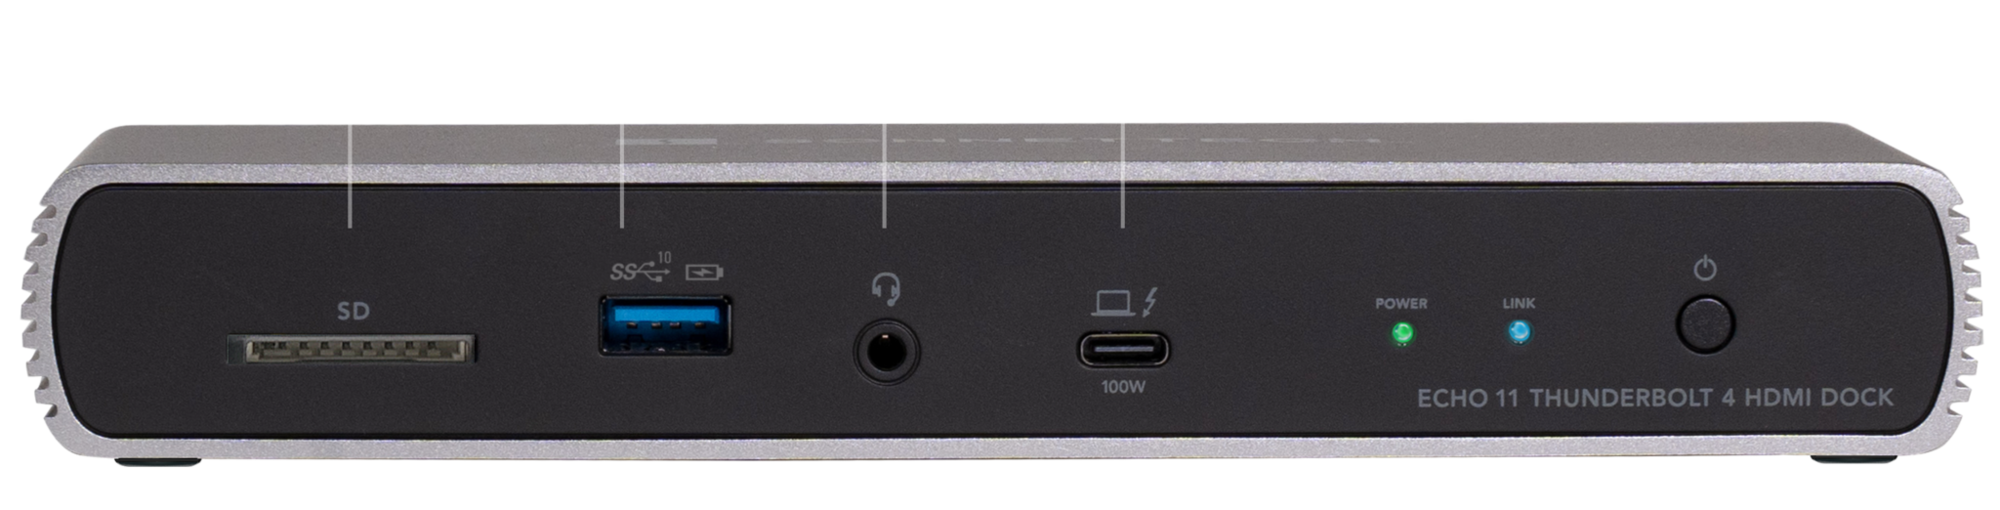 Расширитель портов Sonnet Echo 11 Thunderbolt 4 HDMI Dock